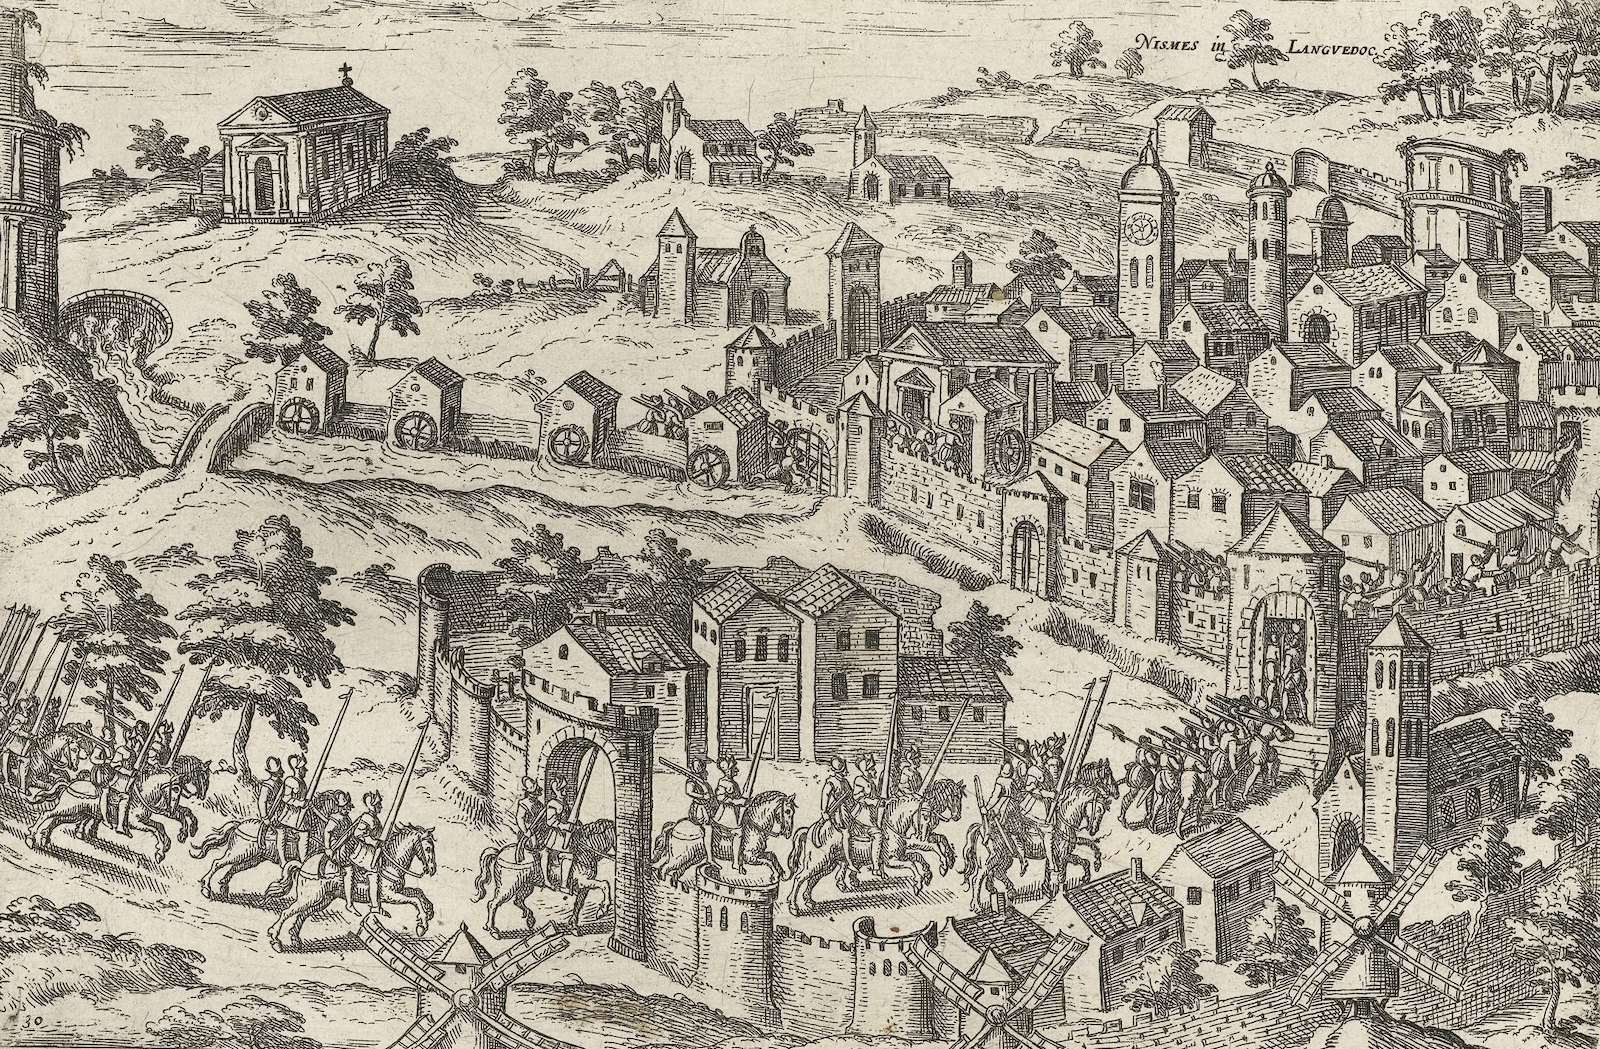 Protestant forces sieze Nîmes, 1569, by Frans Hogenberg. Rijksmuseum. Public Domain.